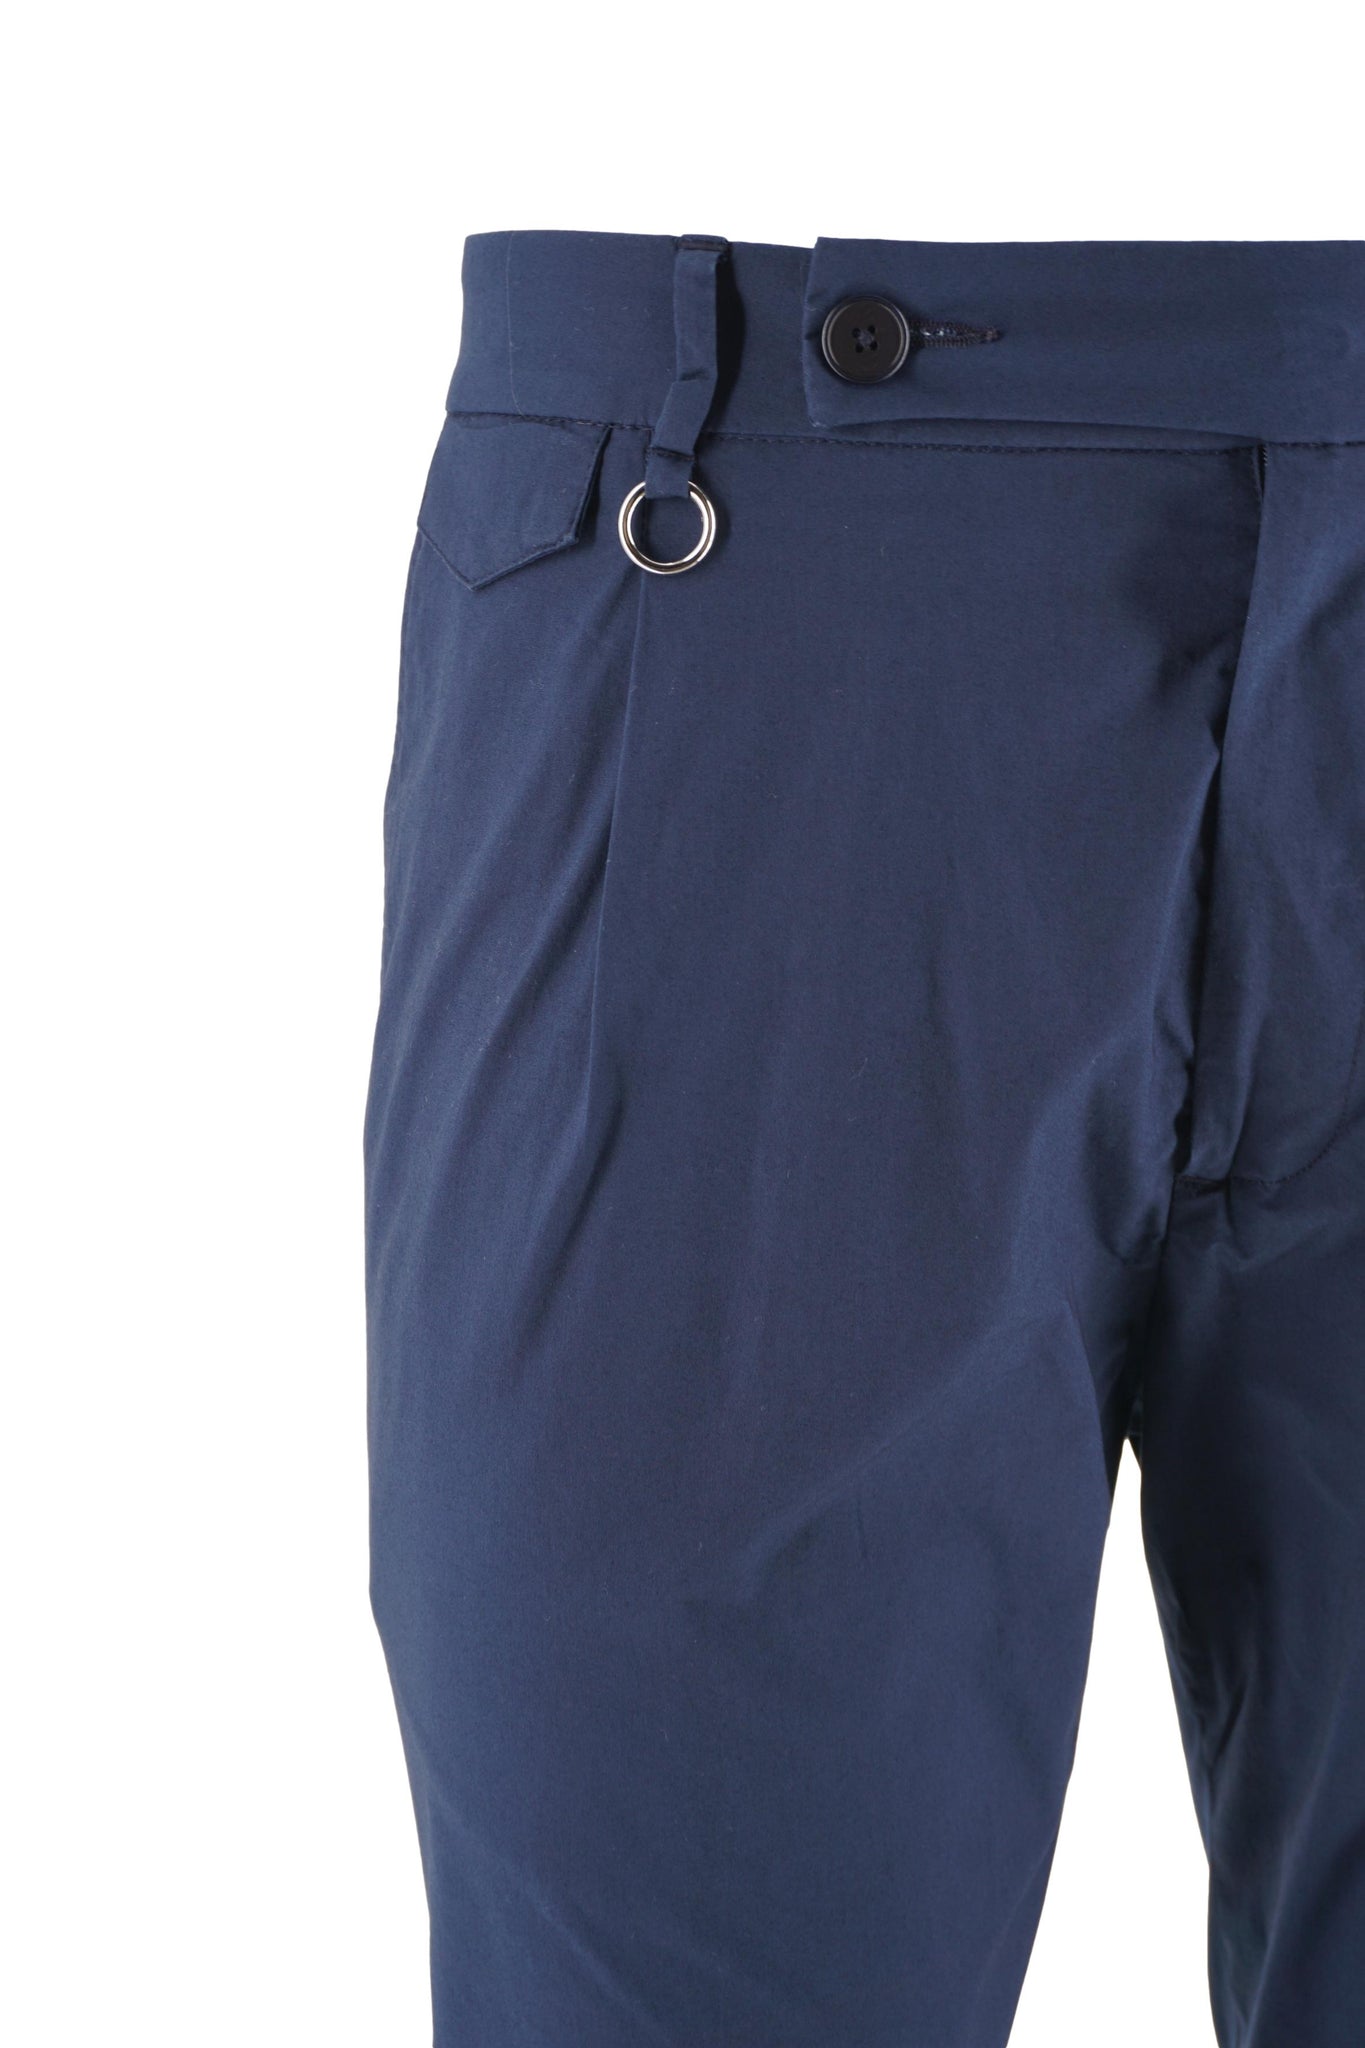 Pantalone Charles in Cotone / Bluette - Ideal Moda